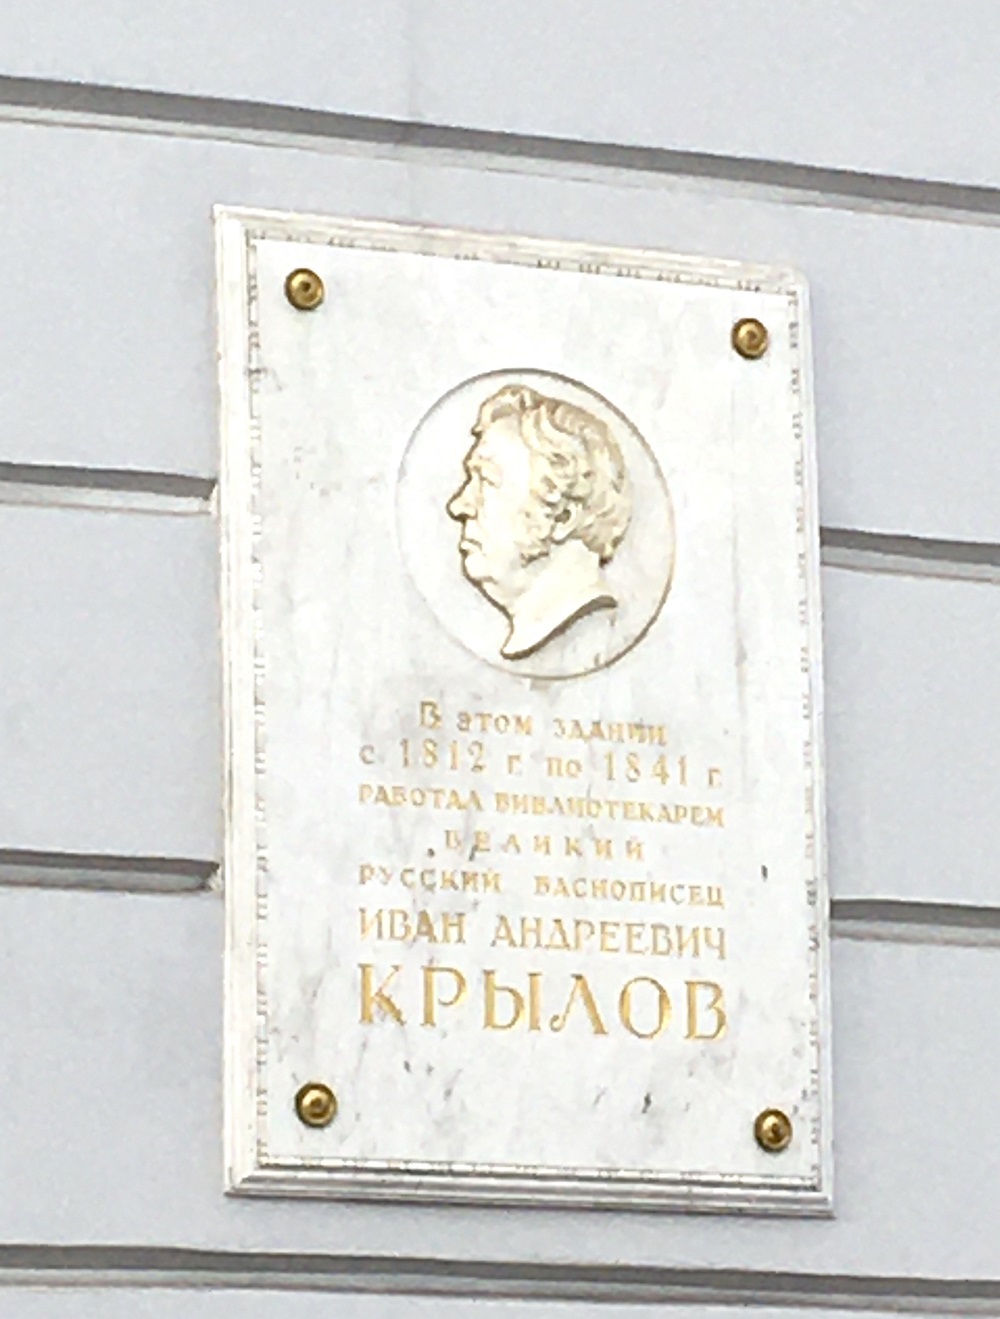 Petersburg, Площадь Островского, 1-3 (Корпус Росси). Petersburg — Memorial plaques